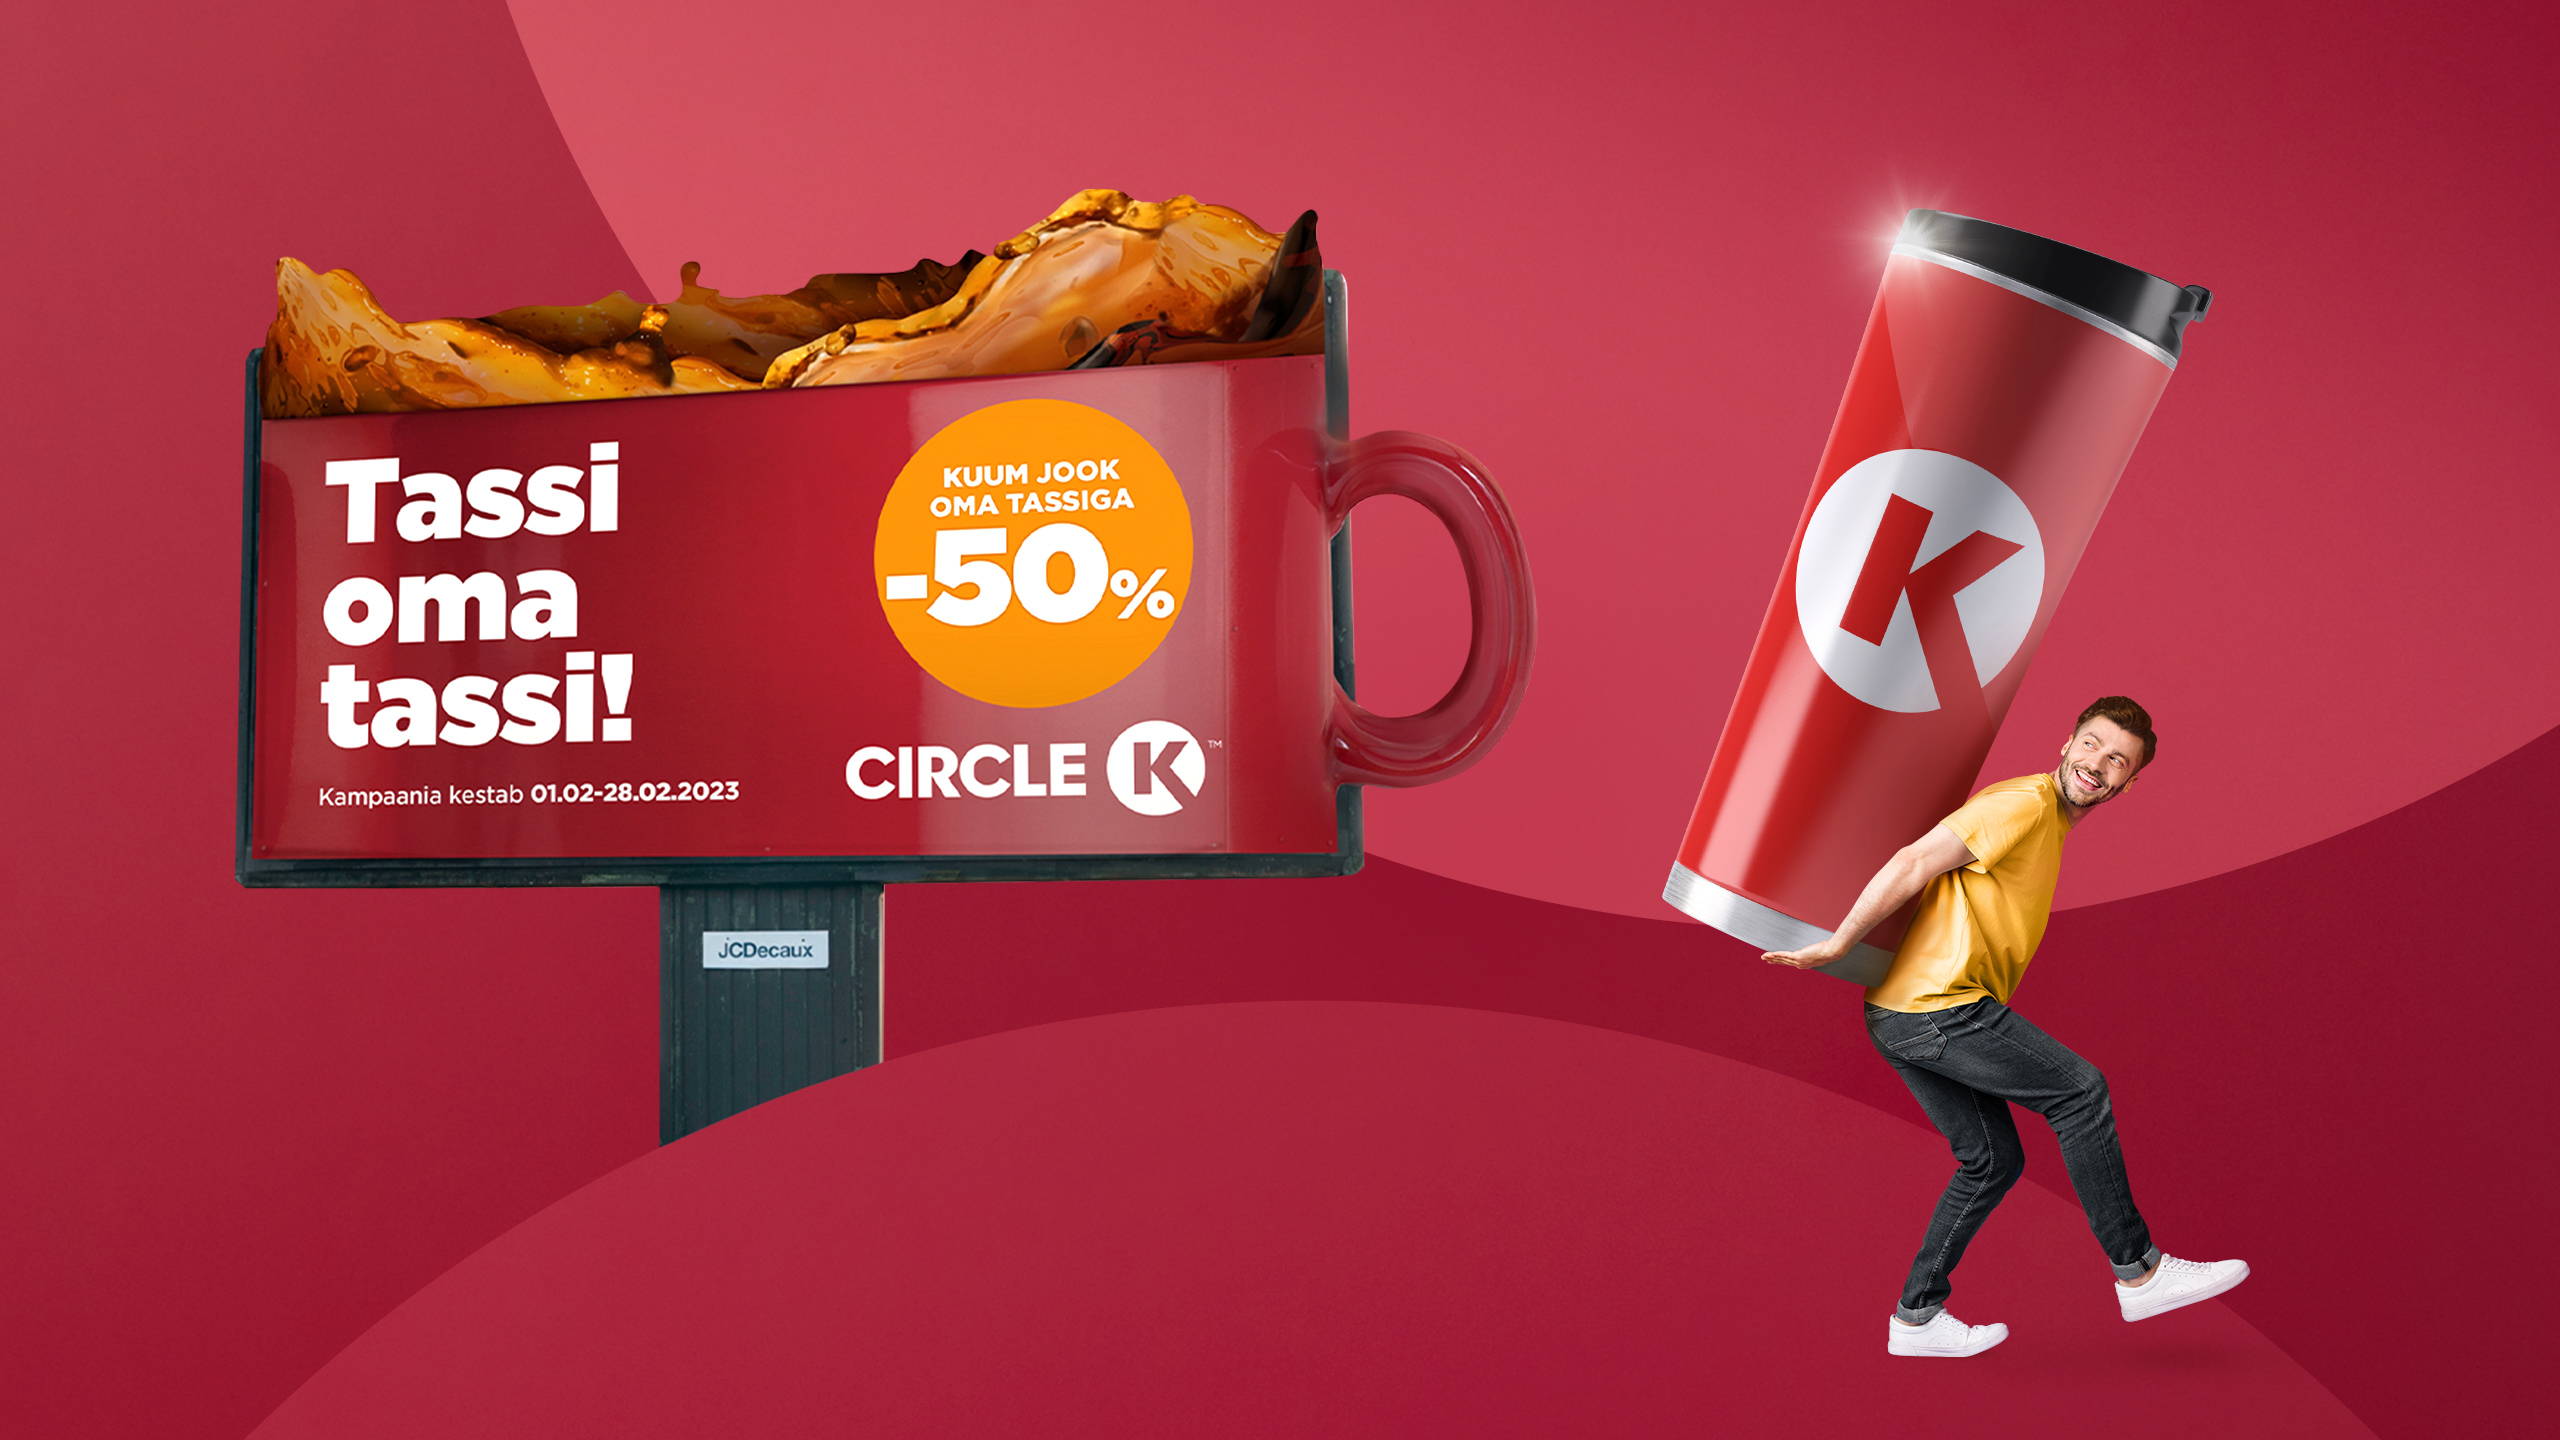 Circle K campaign Tassi oma tassi